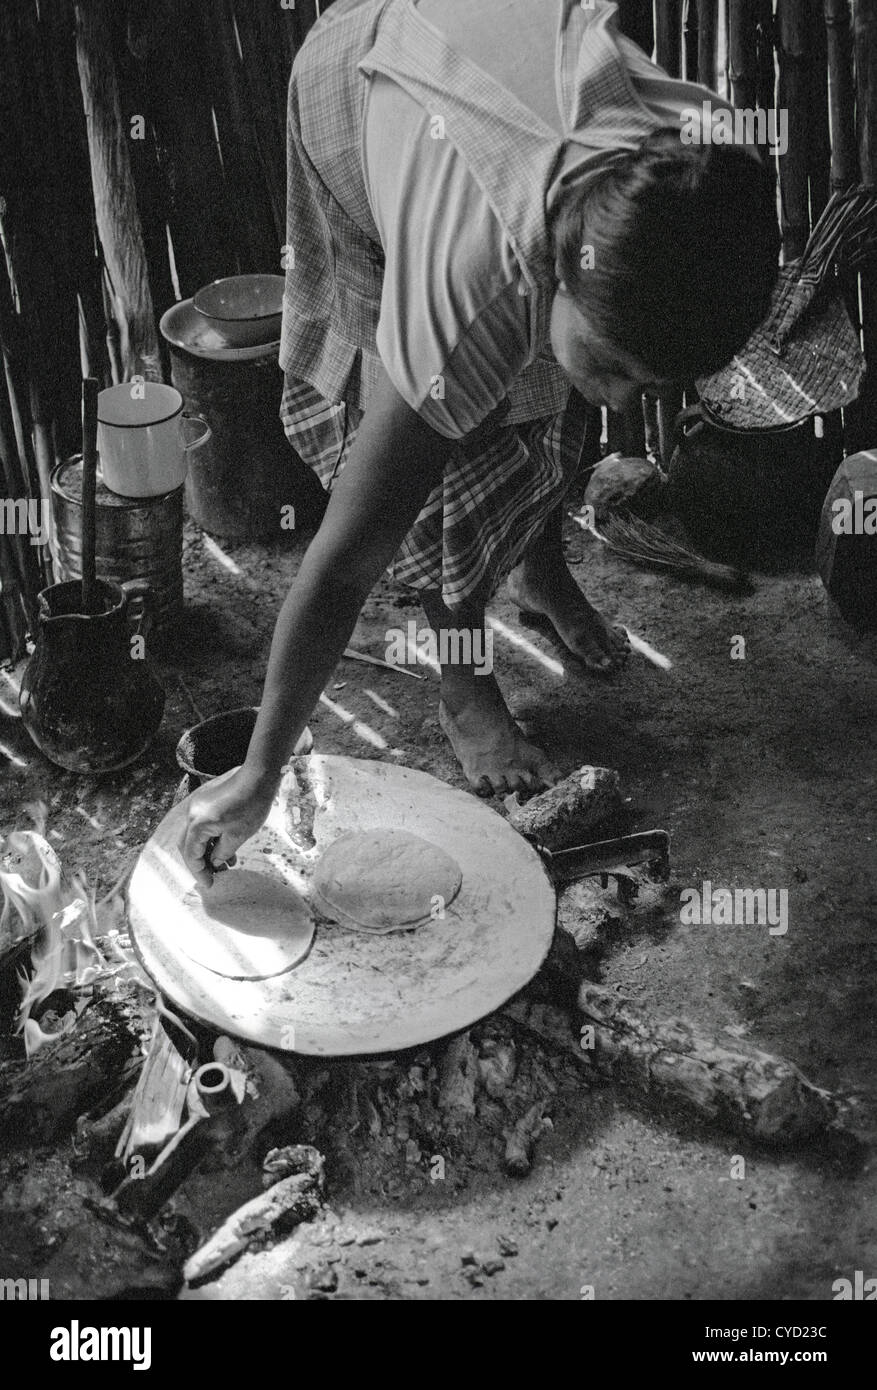 https://c8.alamy.com/compes/cyd23c/fotografia-documental-en-blanco-y-negro-de-kekchi-mujer-cociendo-las-tortillas-en-un-comal-sobre-un-fuego-abierto-en-el-piso-de-su-casa-cyd23c.jpg